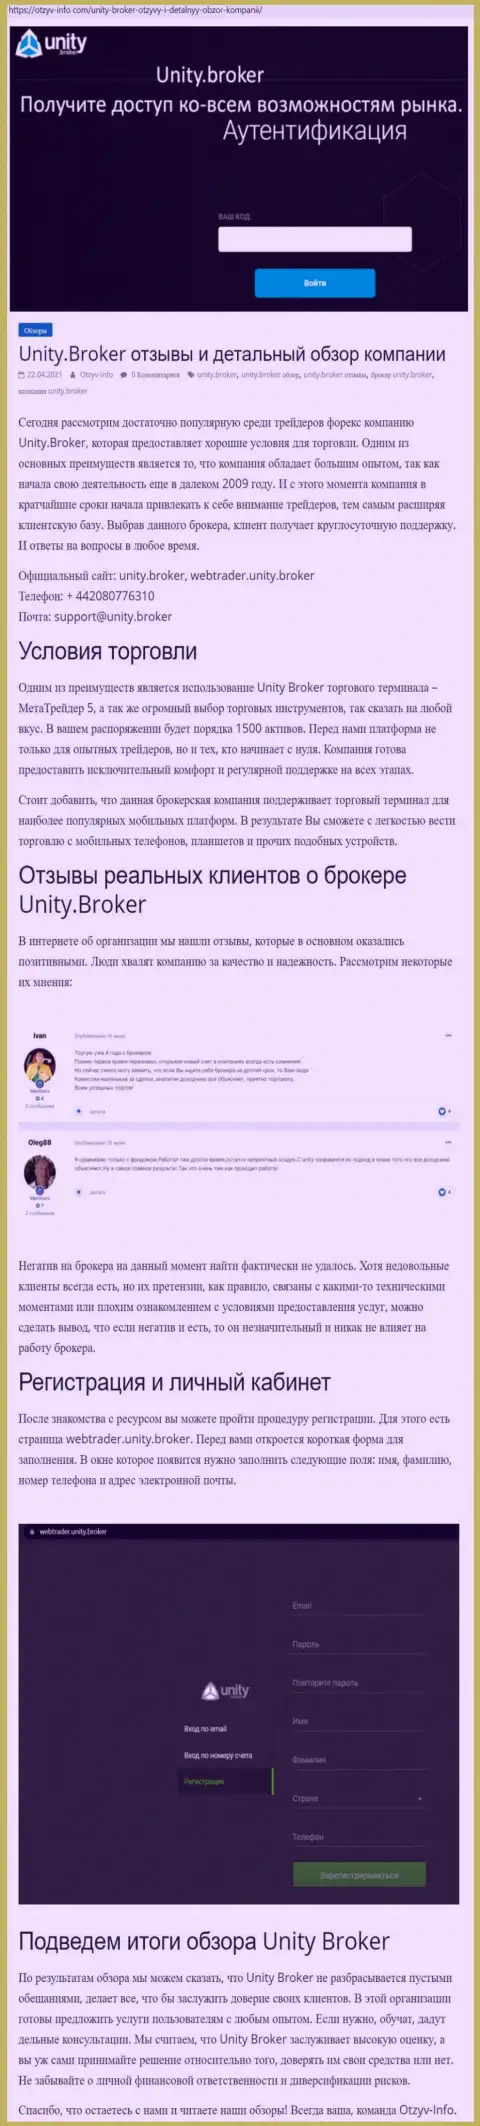 Обзор работы Форекс-брокерской организации Unity Broker на информационном портале otzyv info com